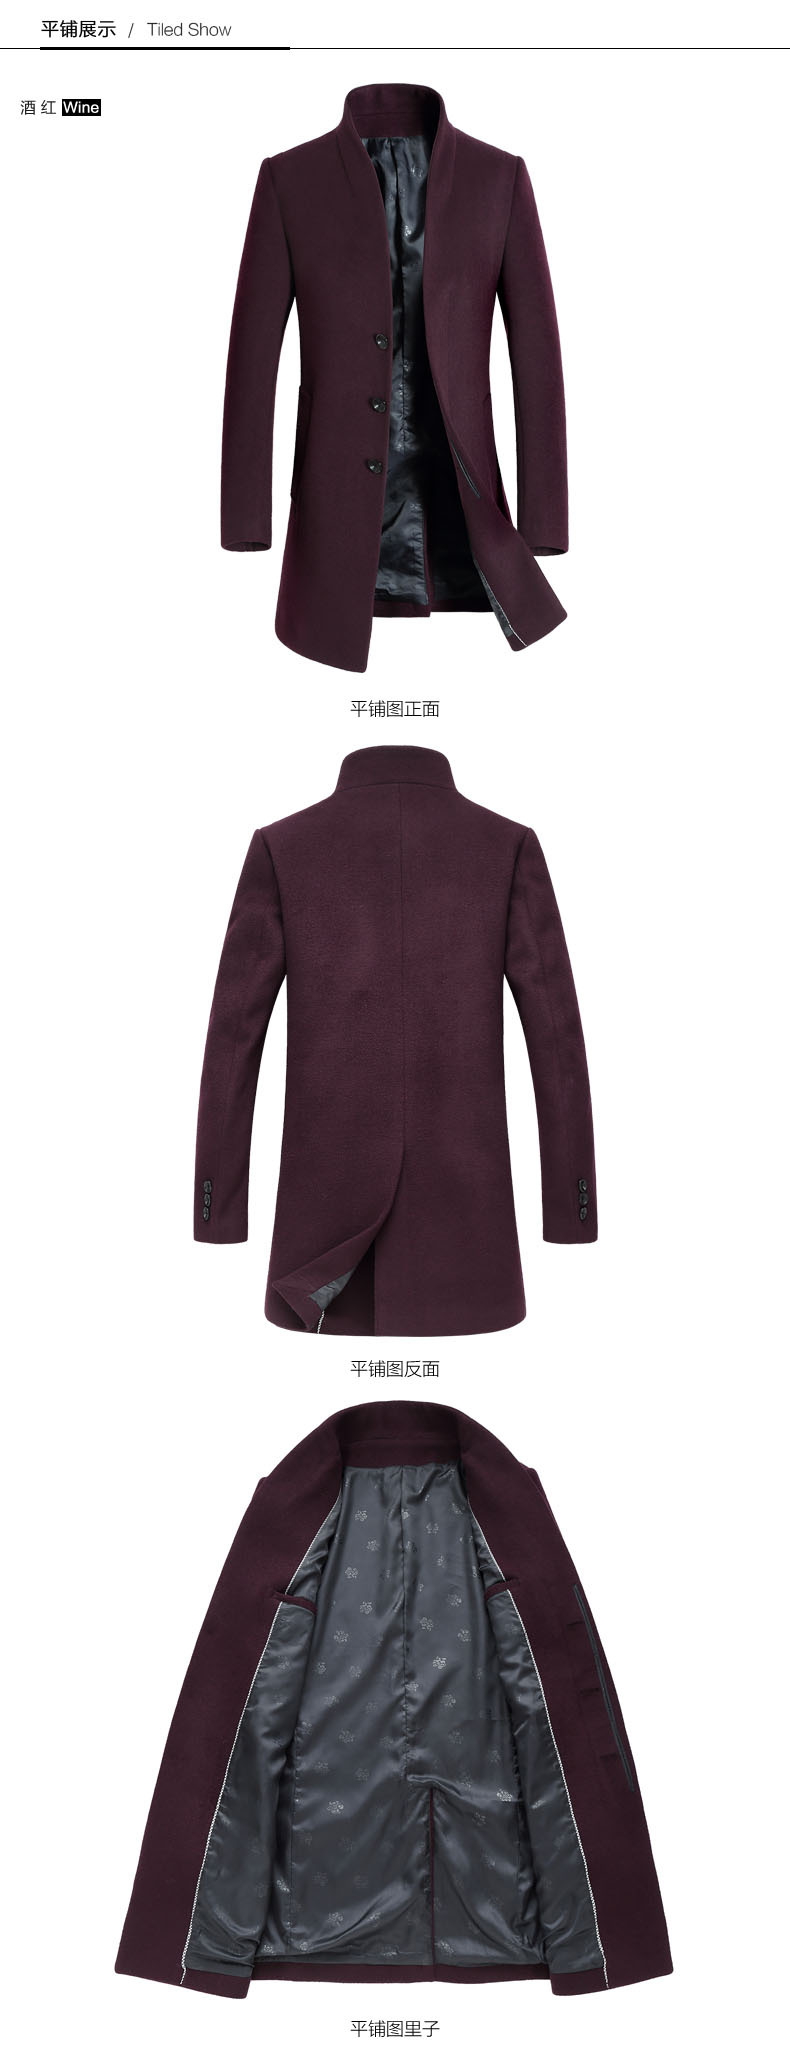 汤河之家 2018秋冬新款男式羊毛呢大衣 中长款青年韩版修身男装风衣外套